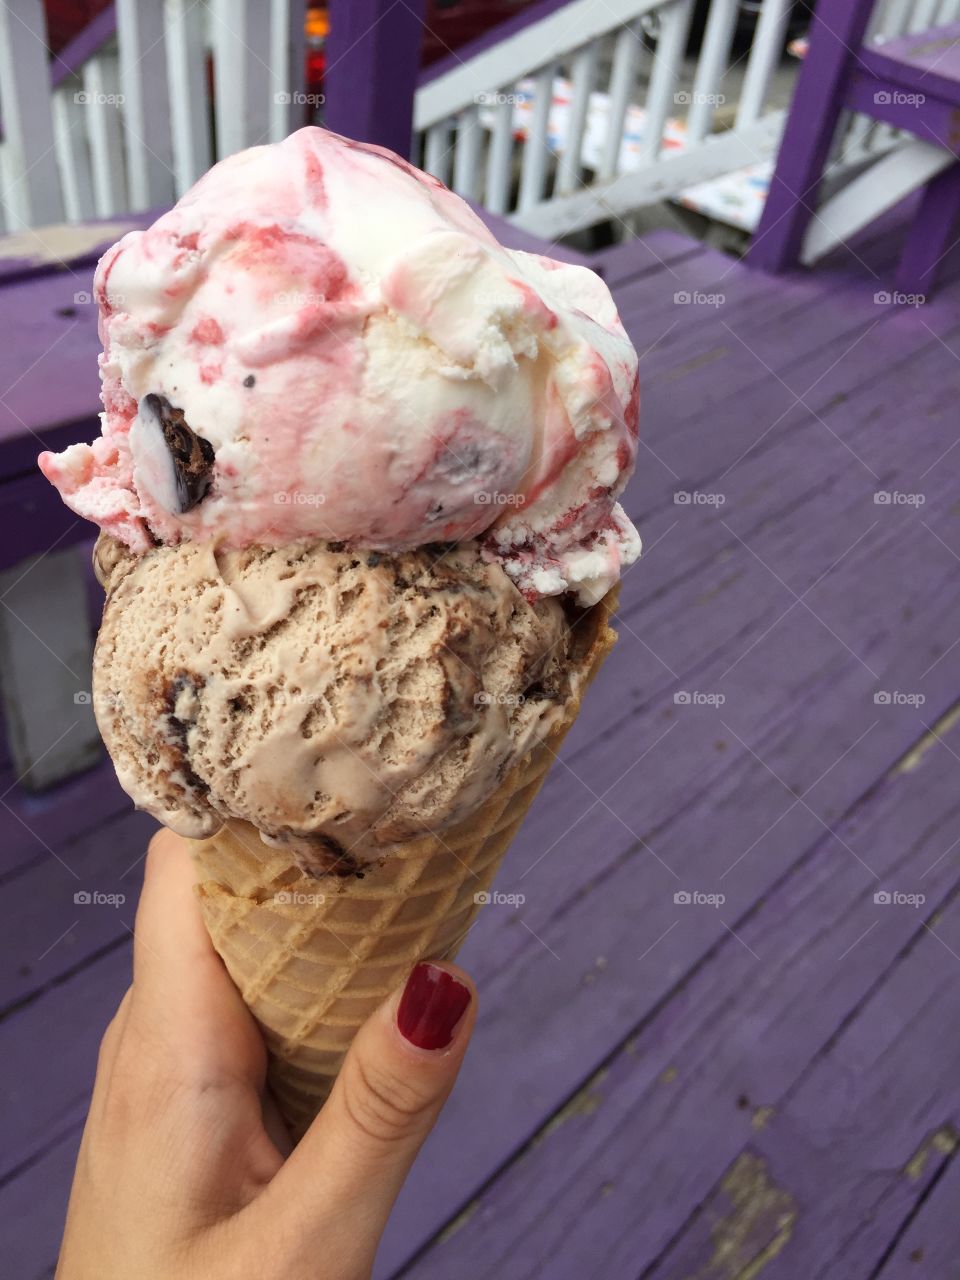 Person's hand holding ice cream cone